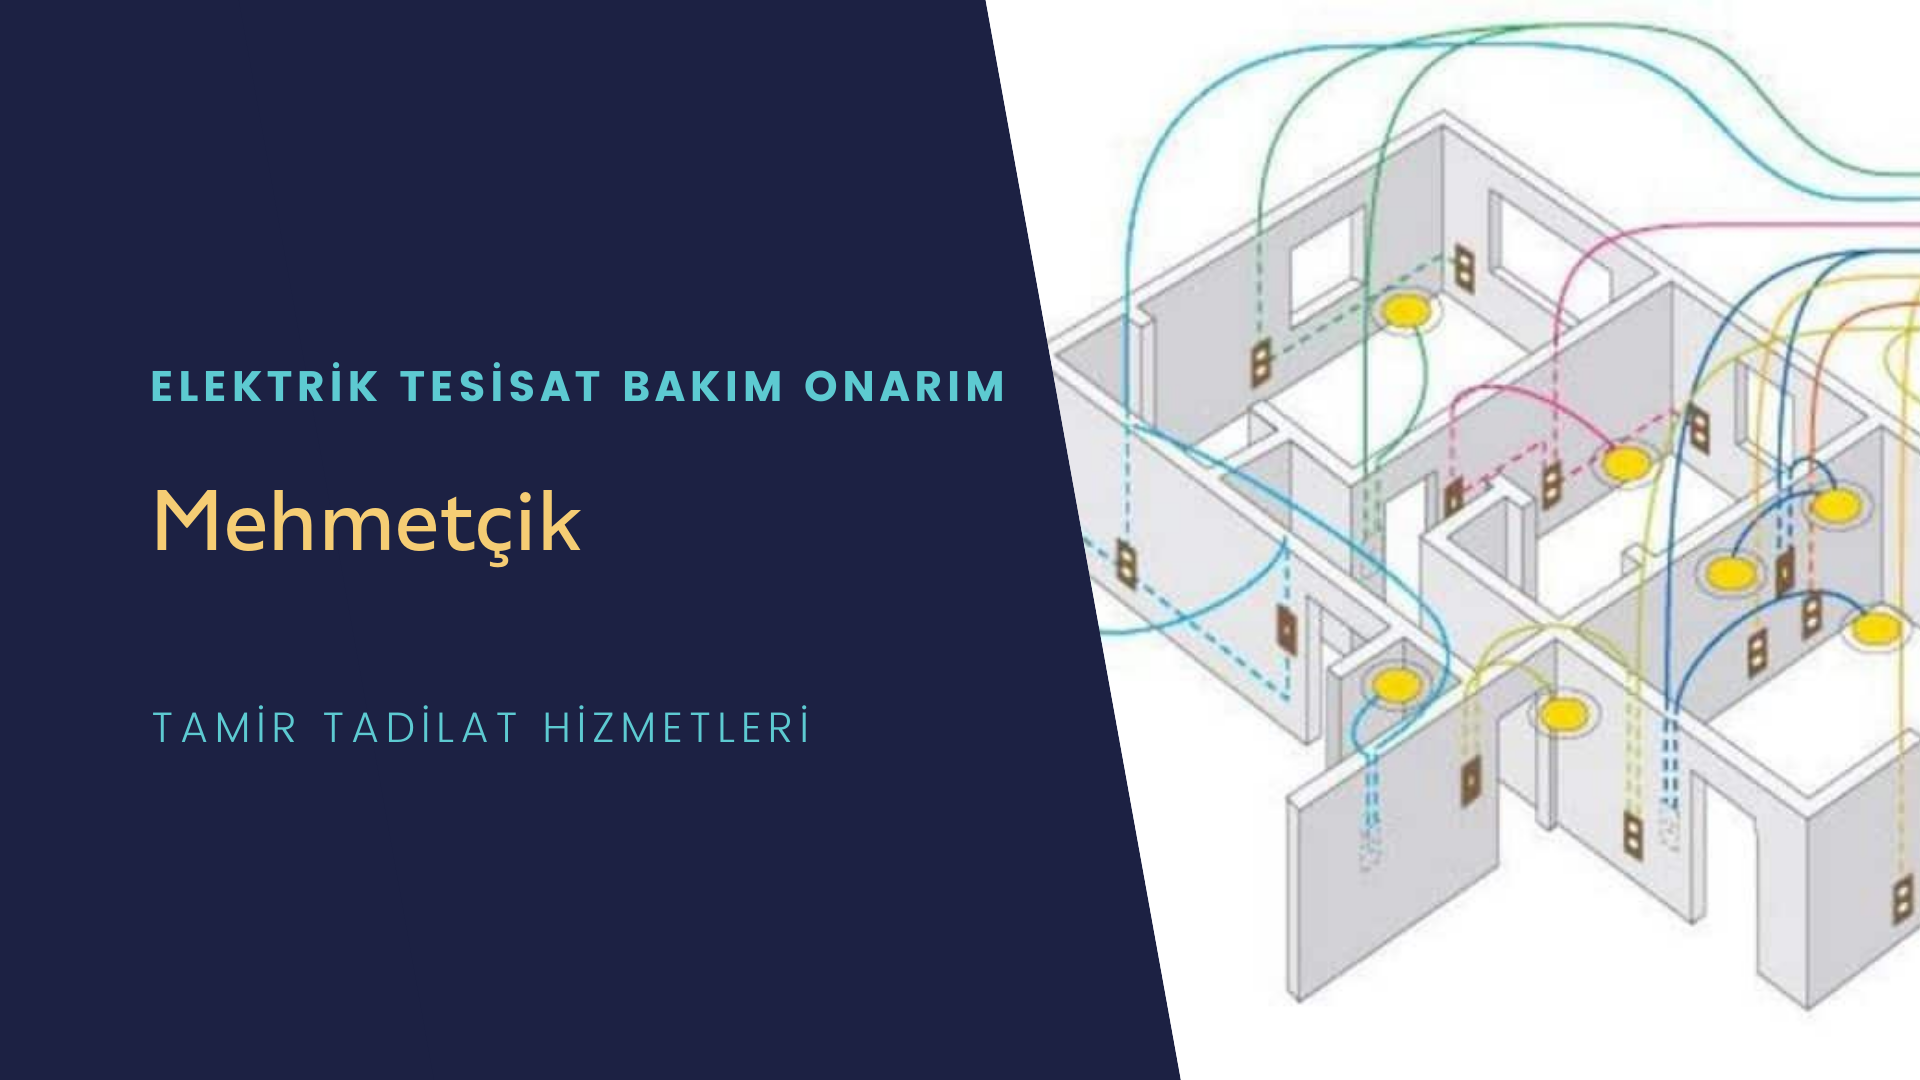 Mehmetçik'te elektrik tesisatı ustalarımı arıyorsunuz doğru adrestenizi Mehmetçik elektrik tesisatı ustalarımız 7/24 sizlere hizmet vermekten mutluluk duyar.